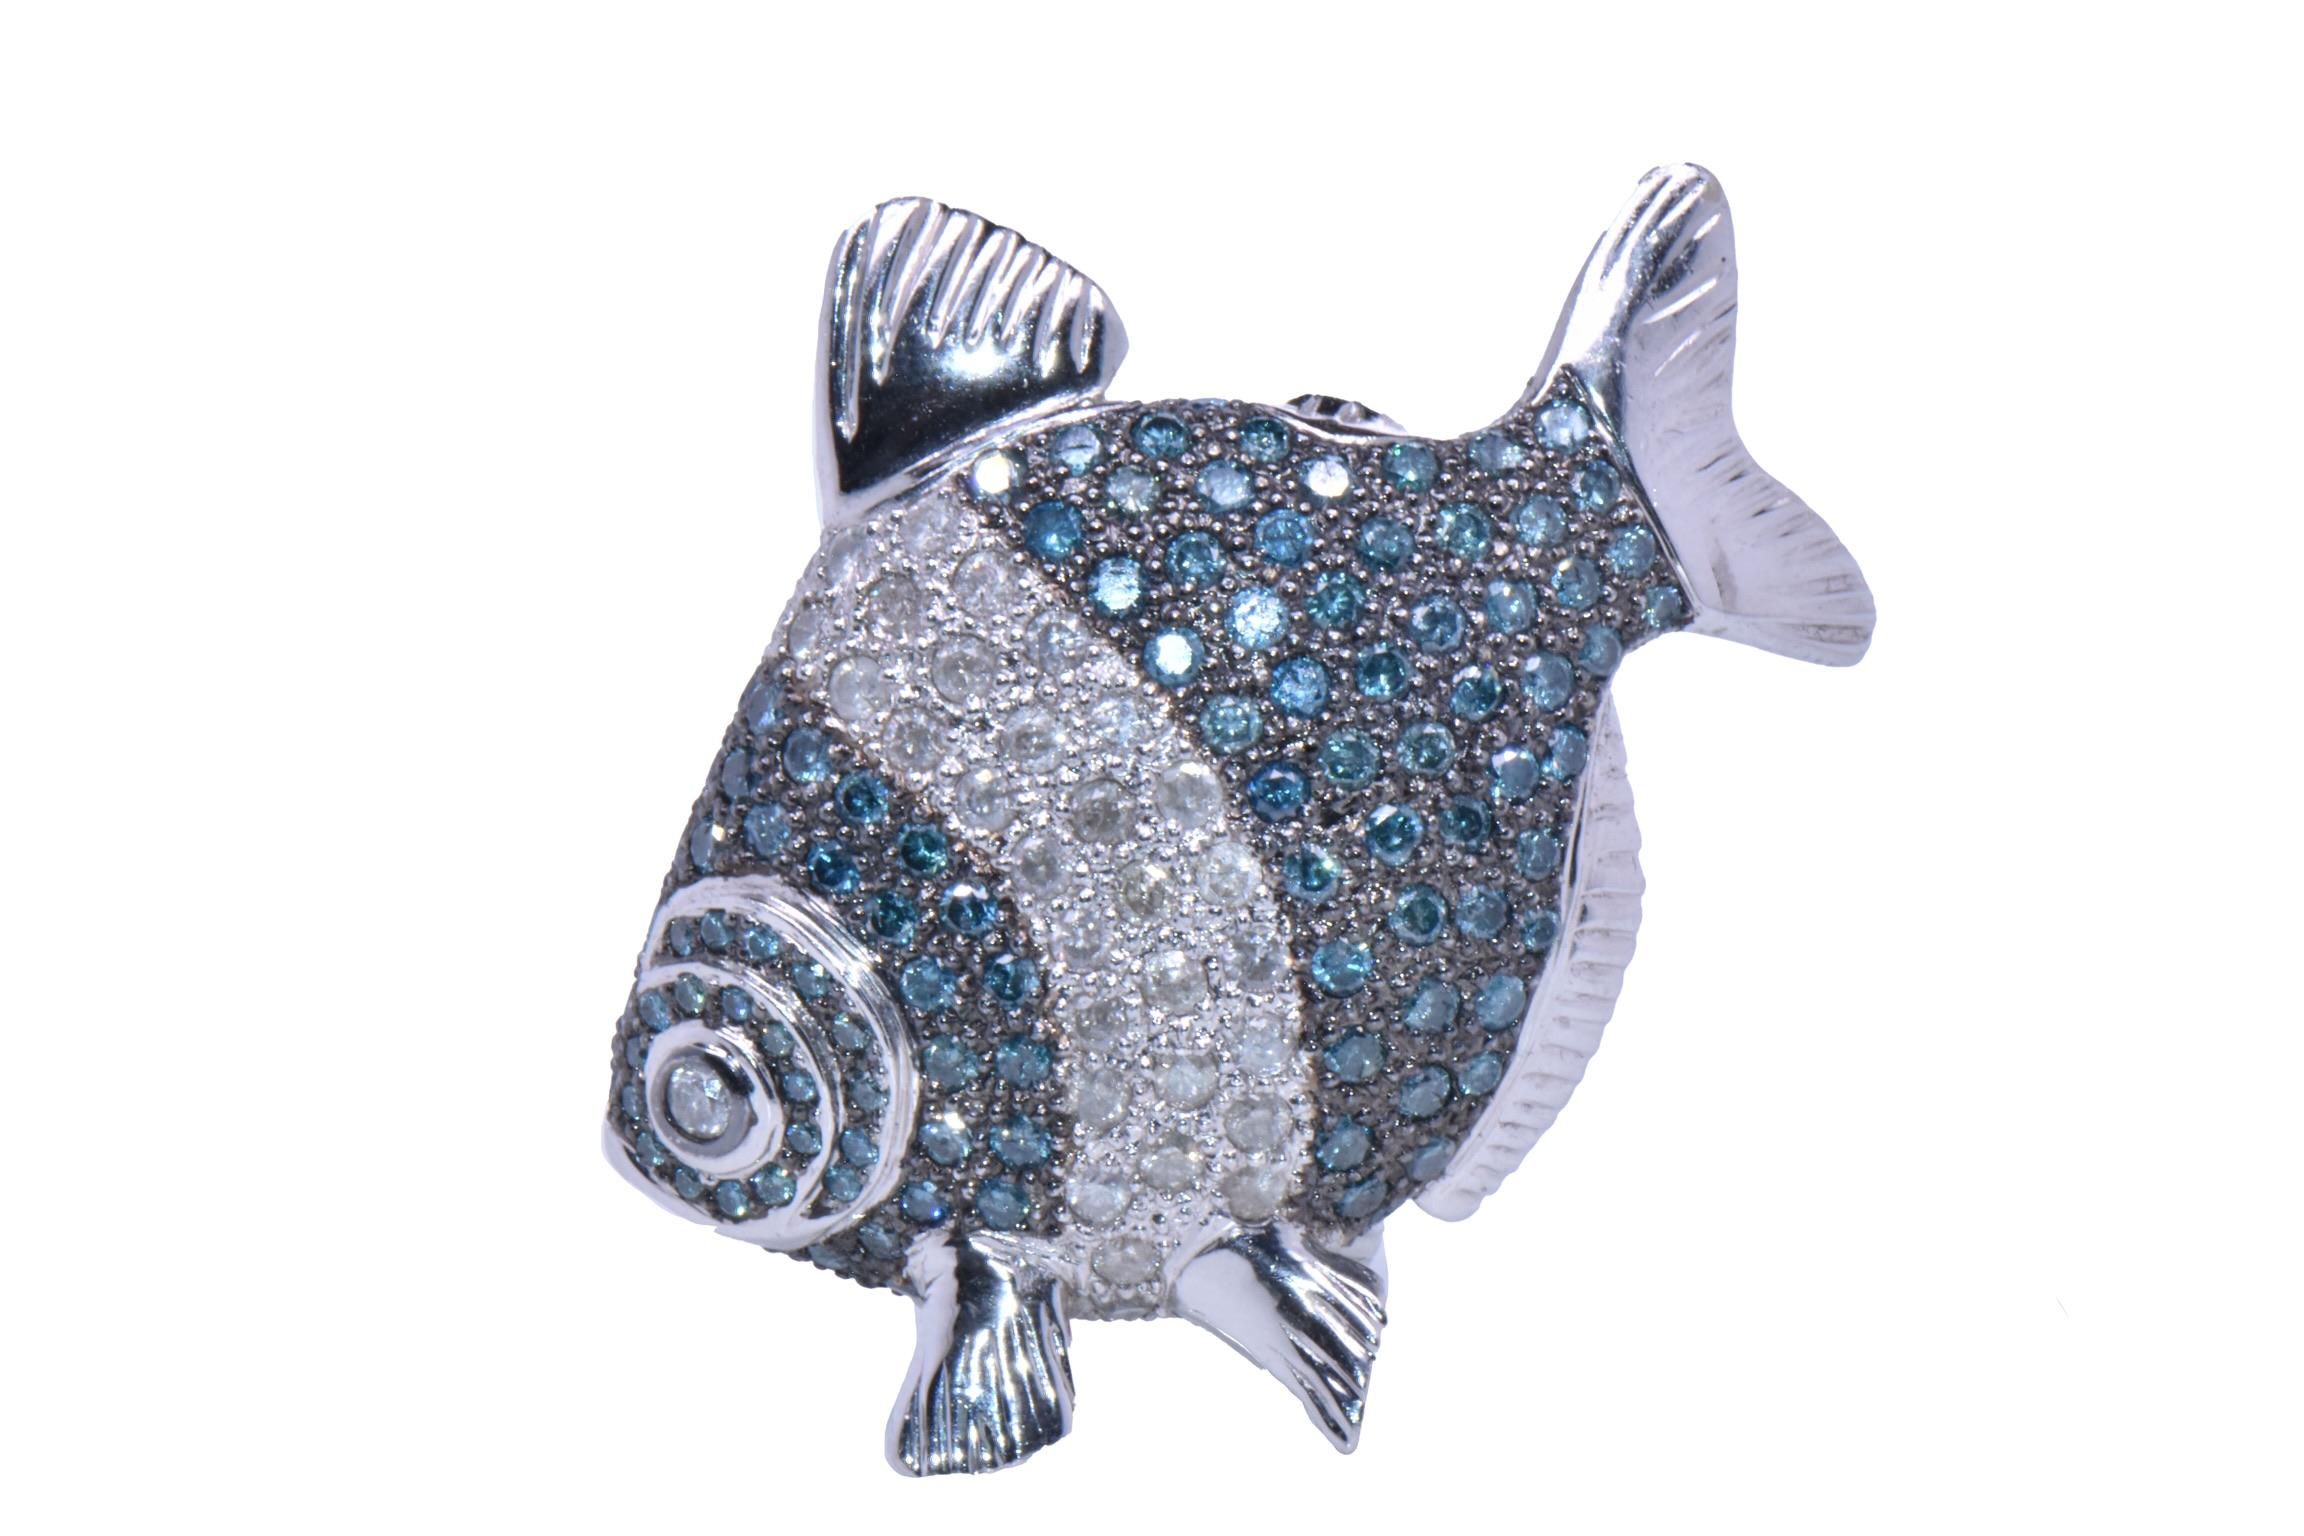 Eine einmalige Fischfigur aus 18k Weißgold mit weißen und blauen Diamanten 
Merkmale:
Diamant Karat Gewicht: 9,20 Karat
Metall: 36,05 Gramm, 18k Weißgold 